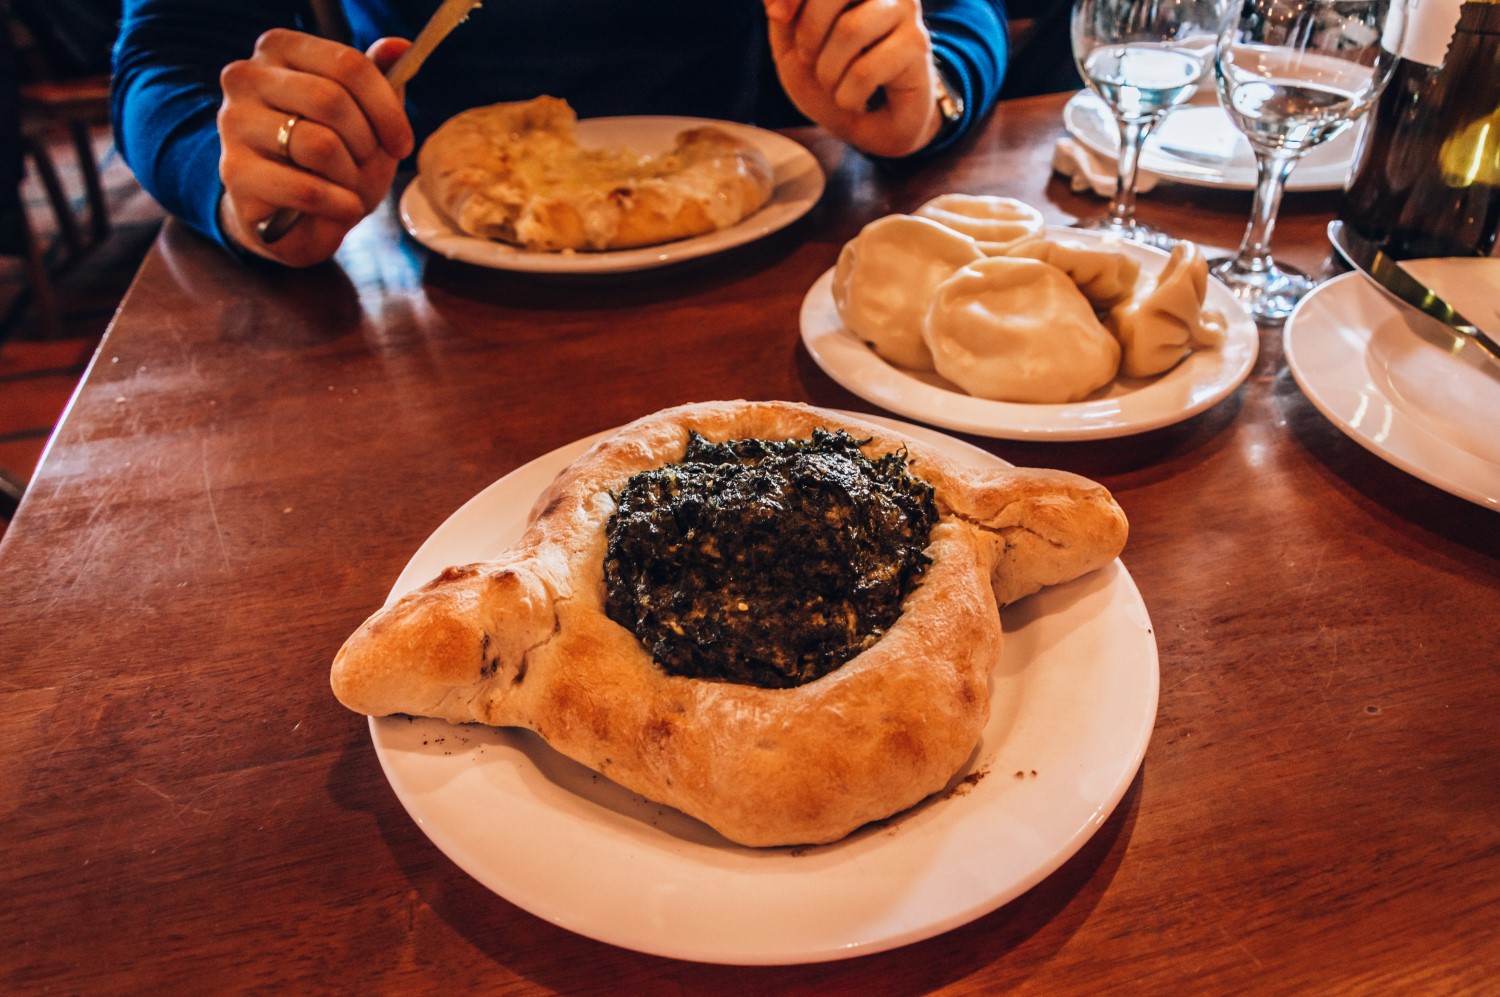 Gruzińska kuchnia, restauracje w Tbilisi - bele kaj, blog podróżniczy po śląsku